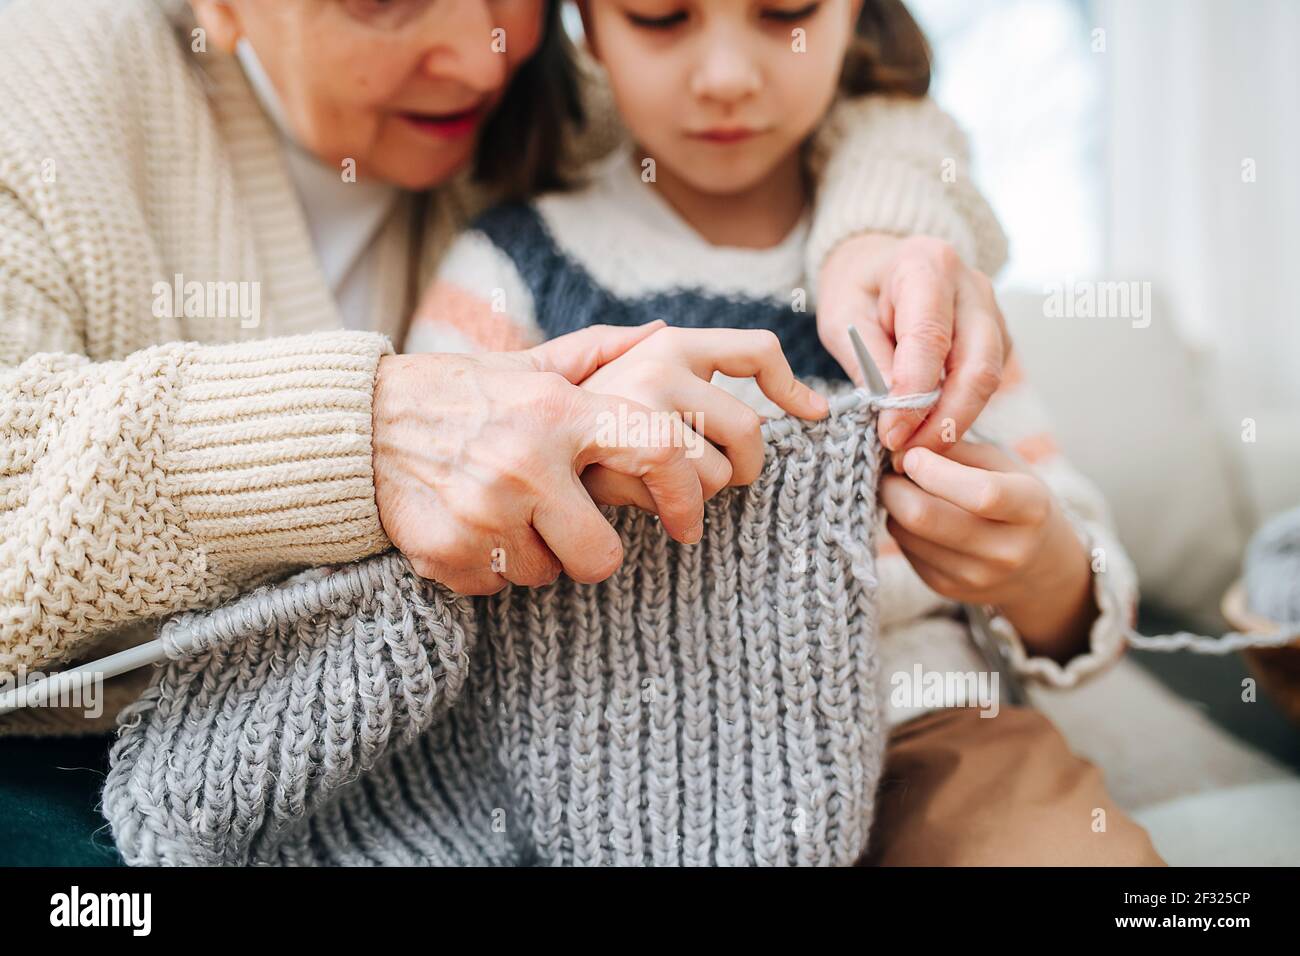 Une grande granny enthousiaste assise sur un canapé avec sa petite-fille, elle lui apprend à tricoter, en tenant les mains au-dessus de ses arrières. Gros plan, concentrez-vous sur vos mains. Faces Banque D'Images